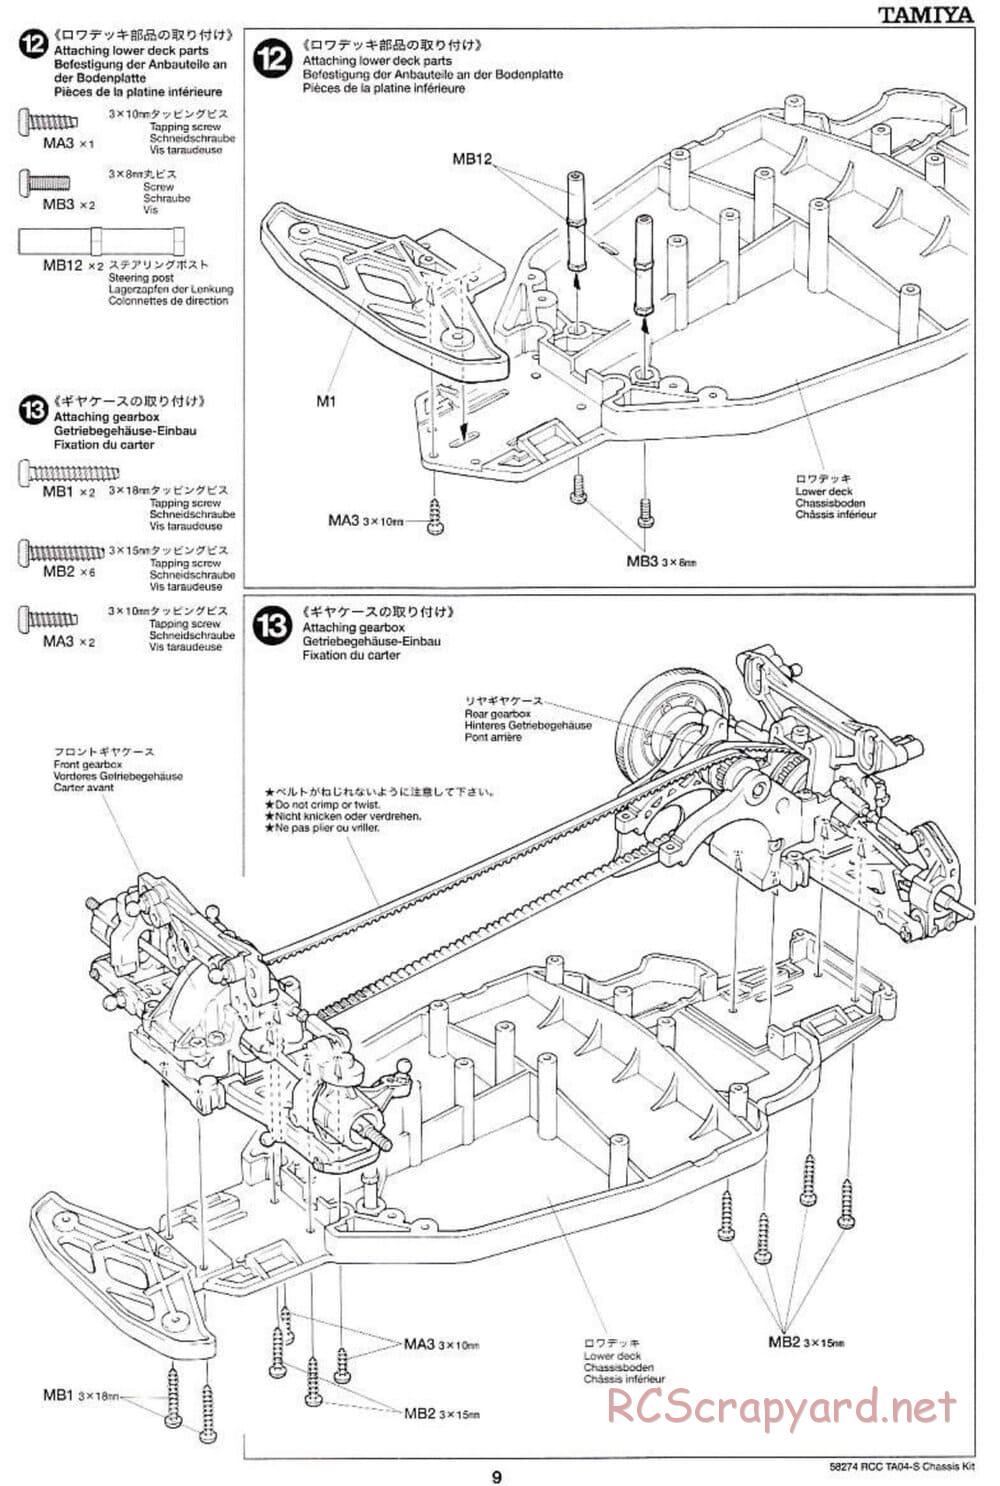 Tamiya - TA-04S Chassis - Manual - Page 9